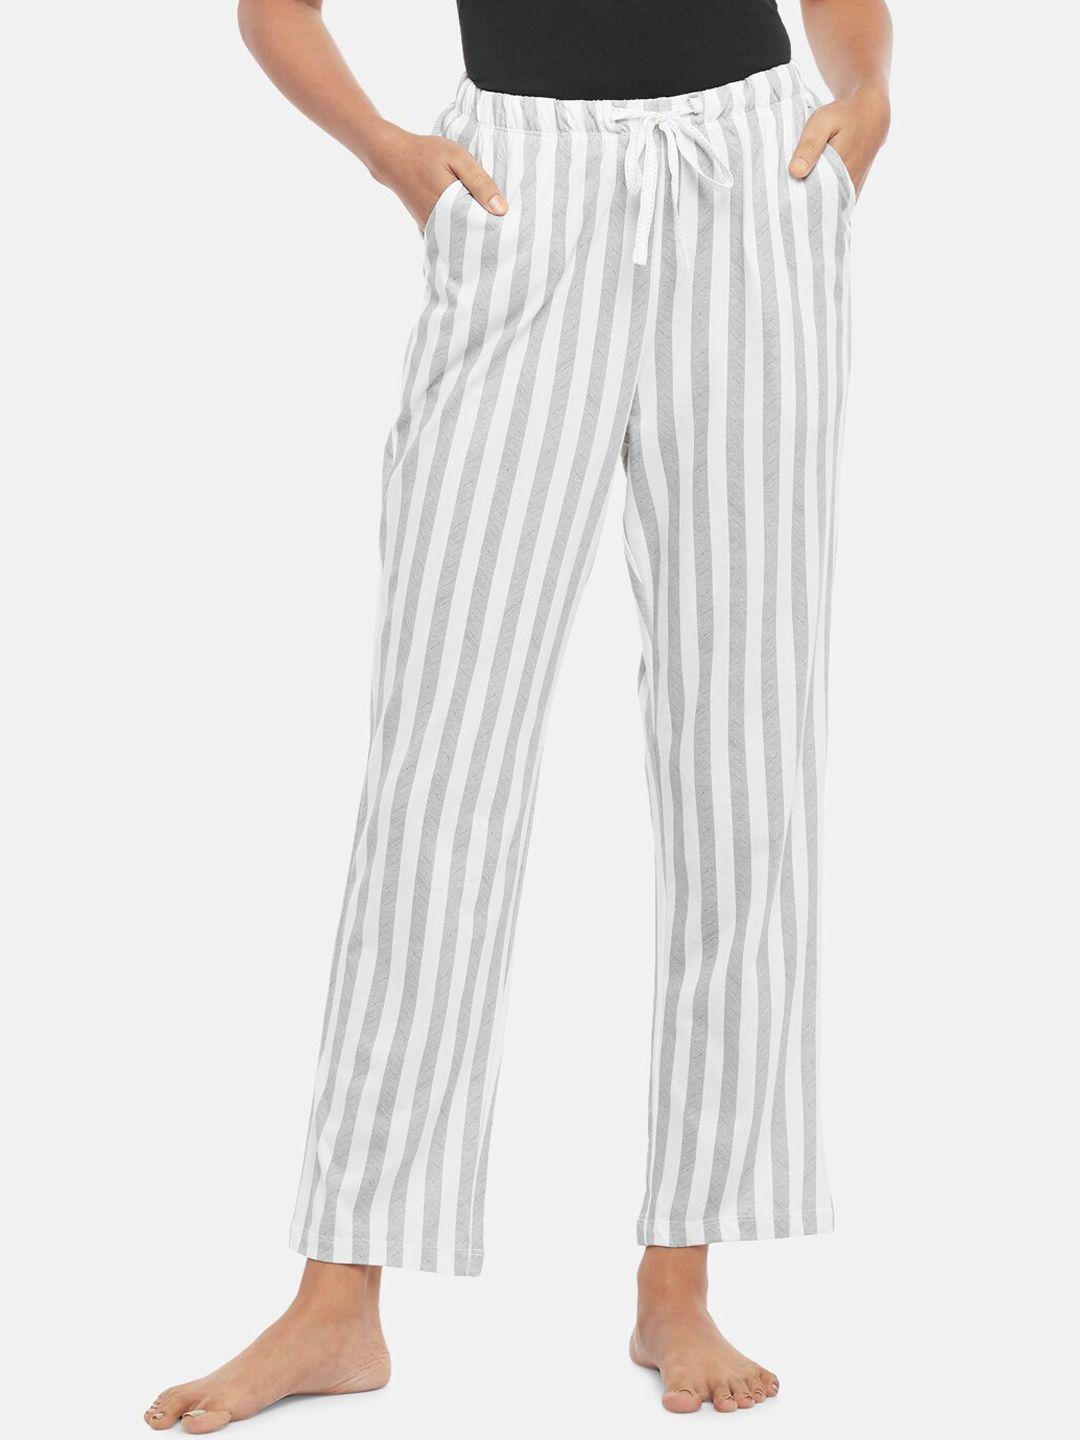 dreamz by pantaloons women grey & white striped lounge pant